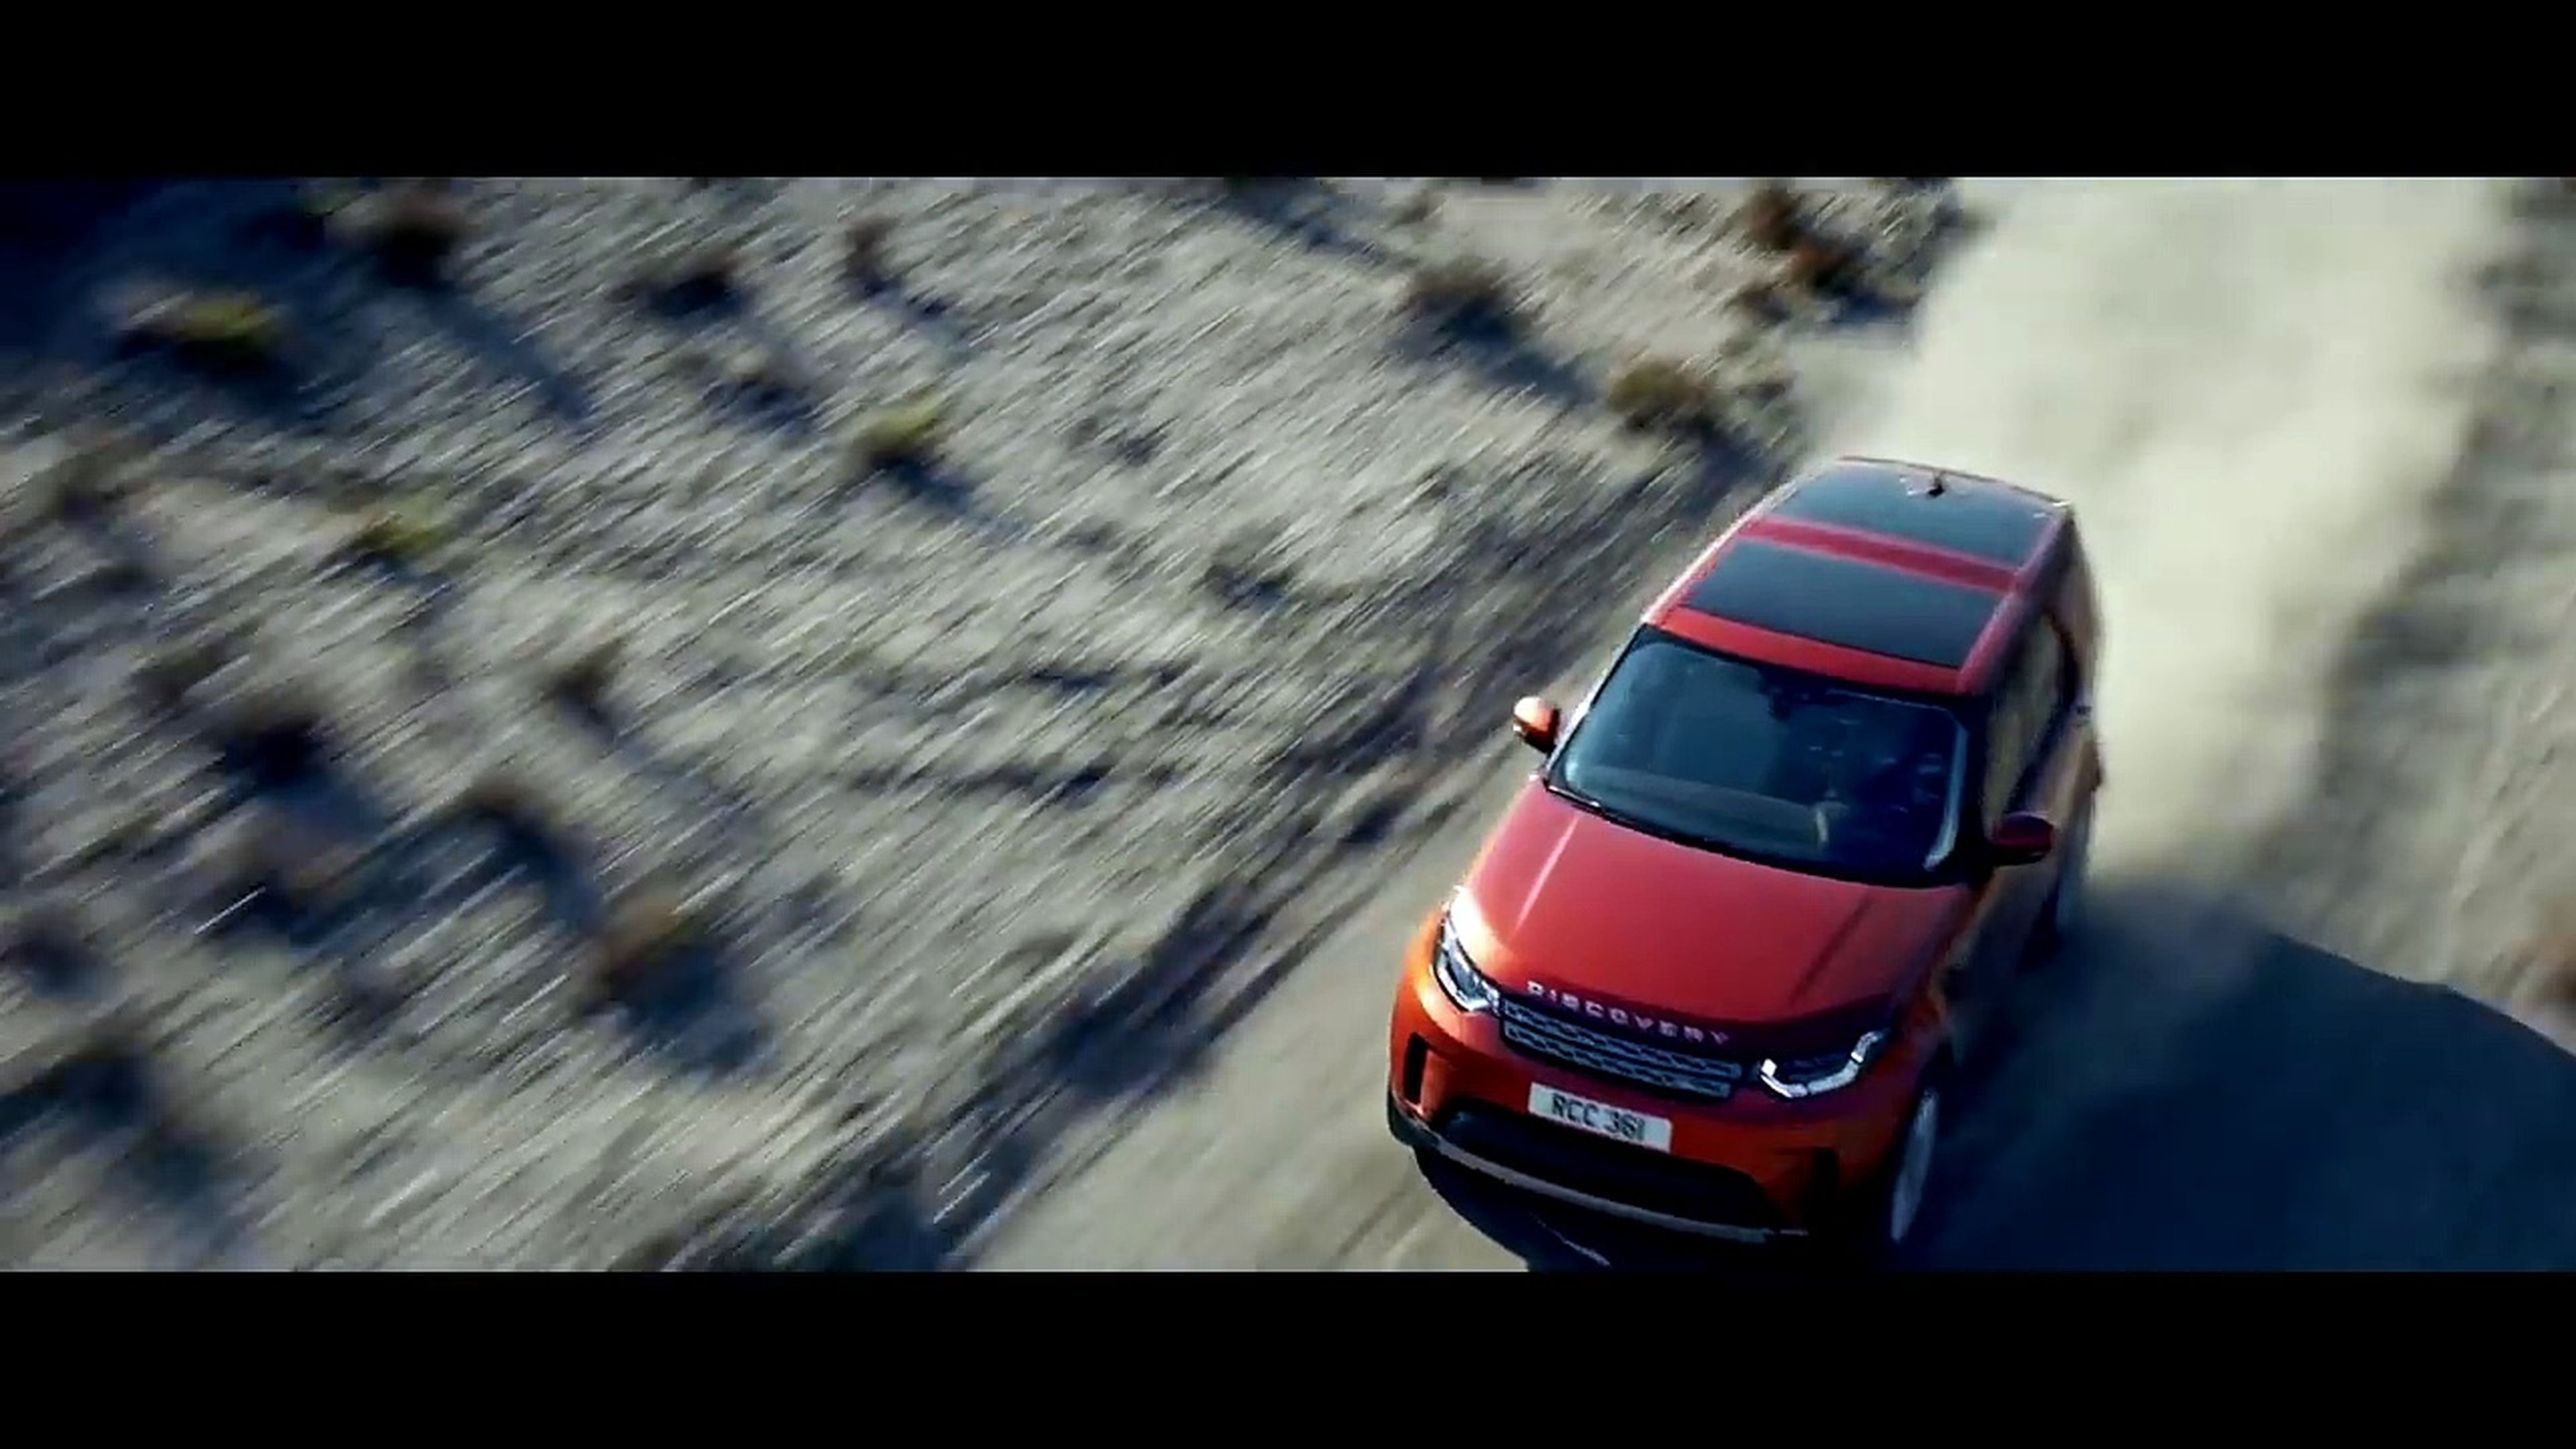 VÍDEO: ¡Al extremo! Mira cómo se prueba un Land Rover